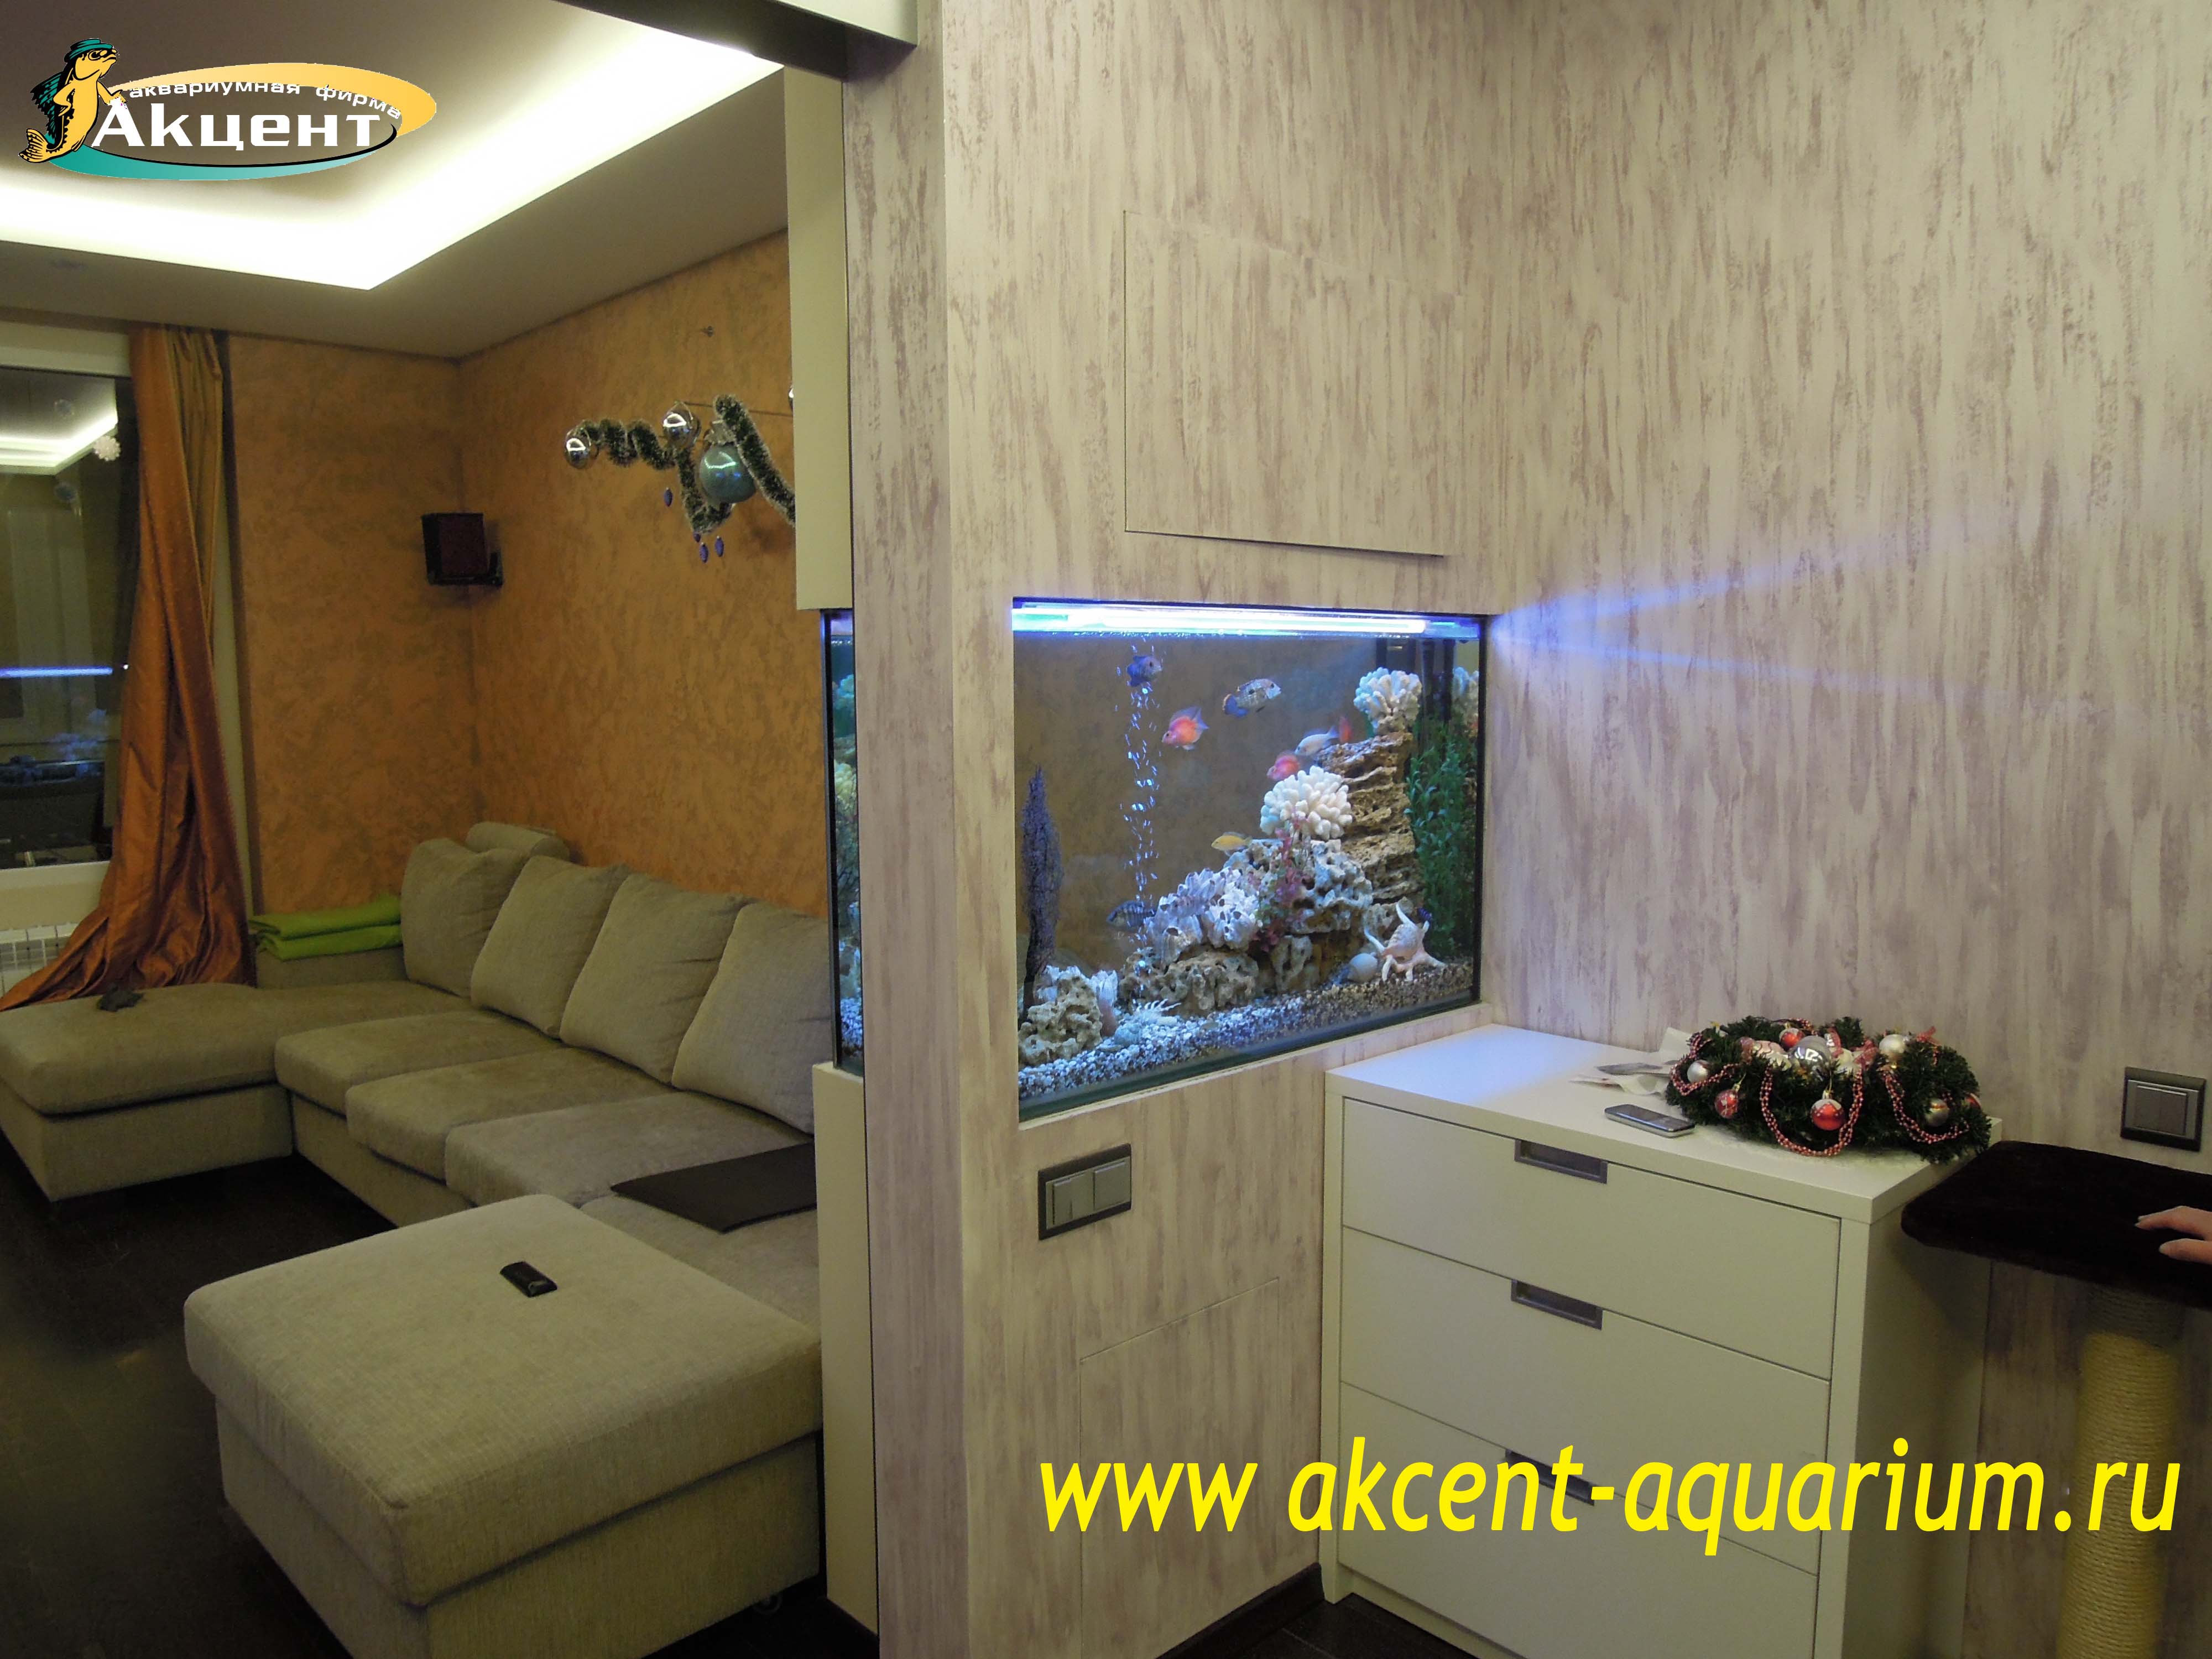 Акцент-аквариум, аквариум 300 литров встроенный в стену